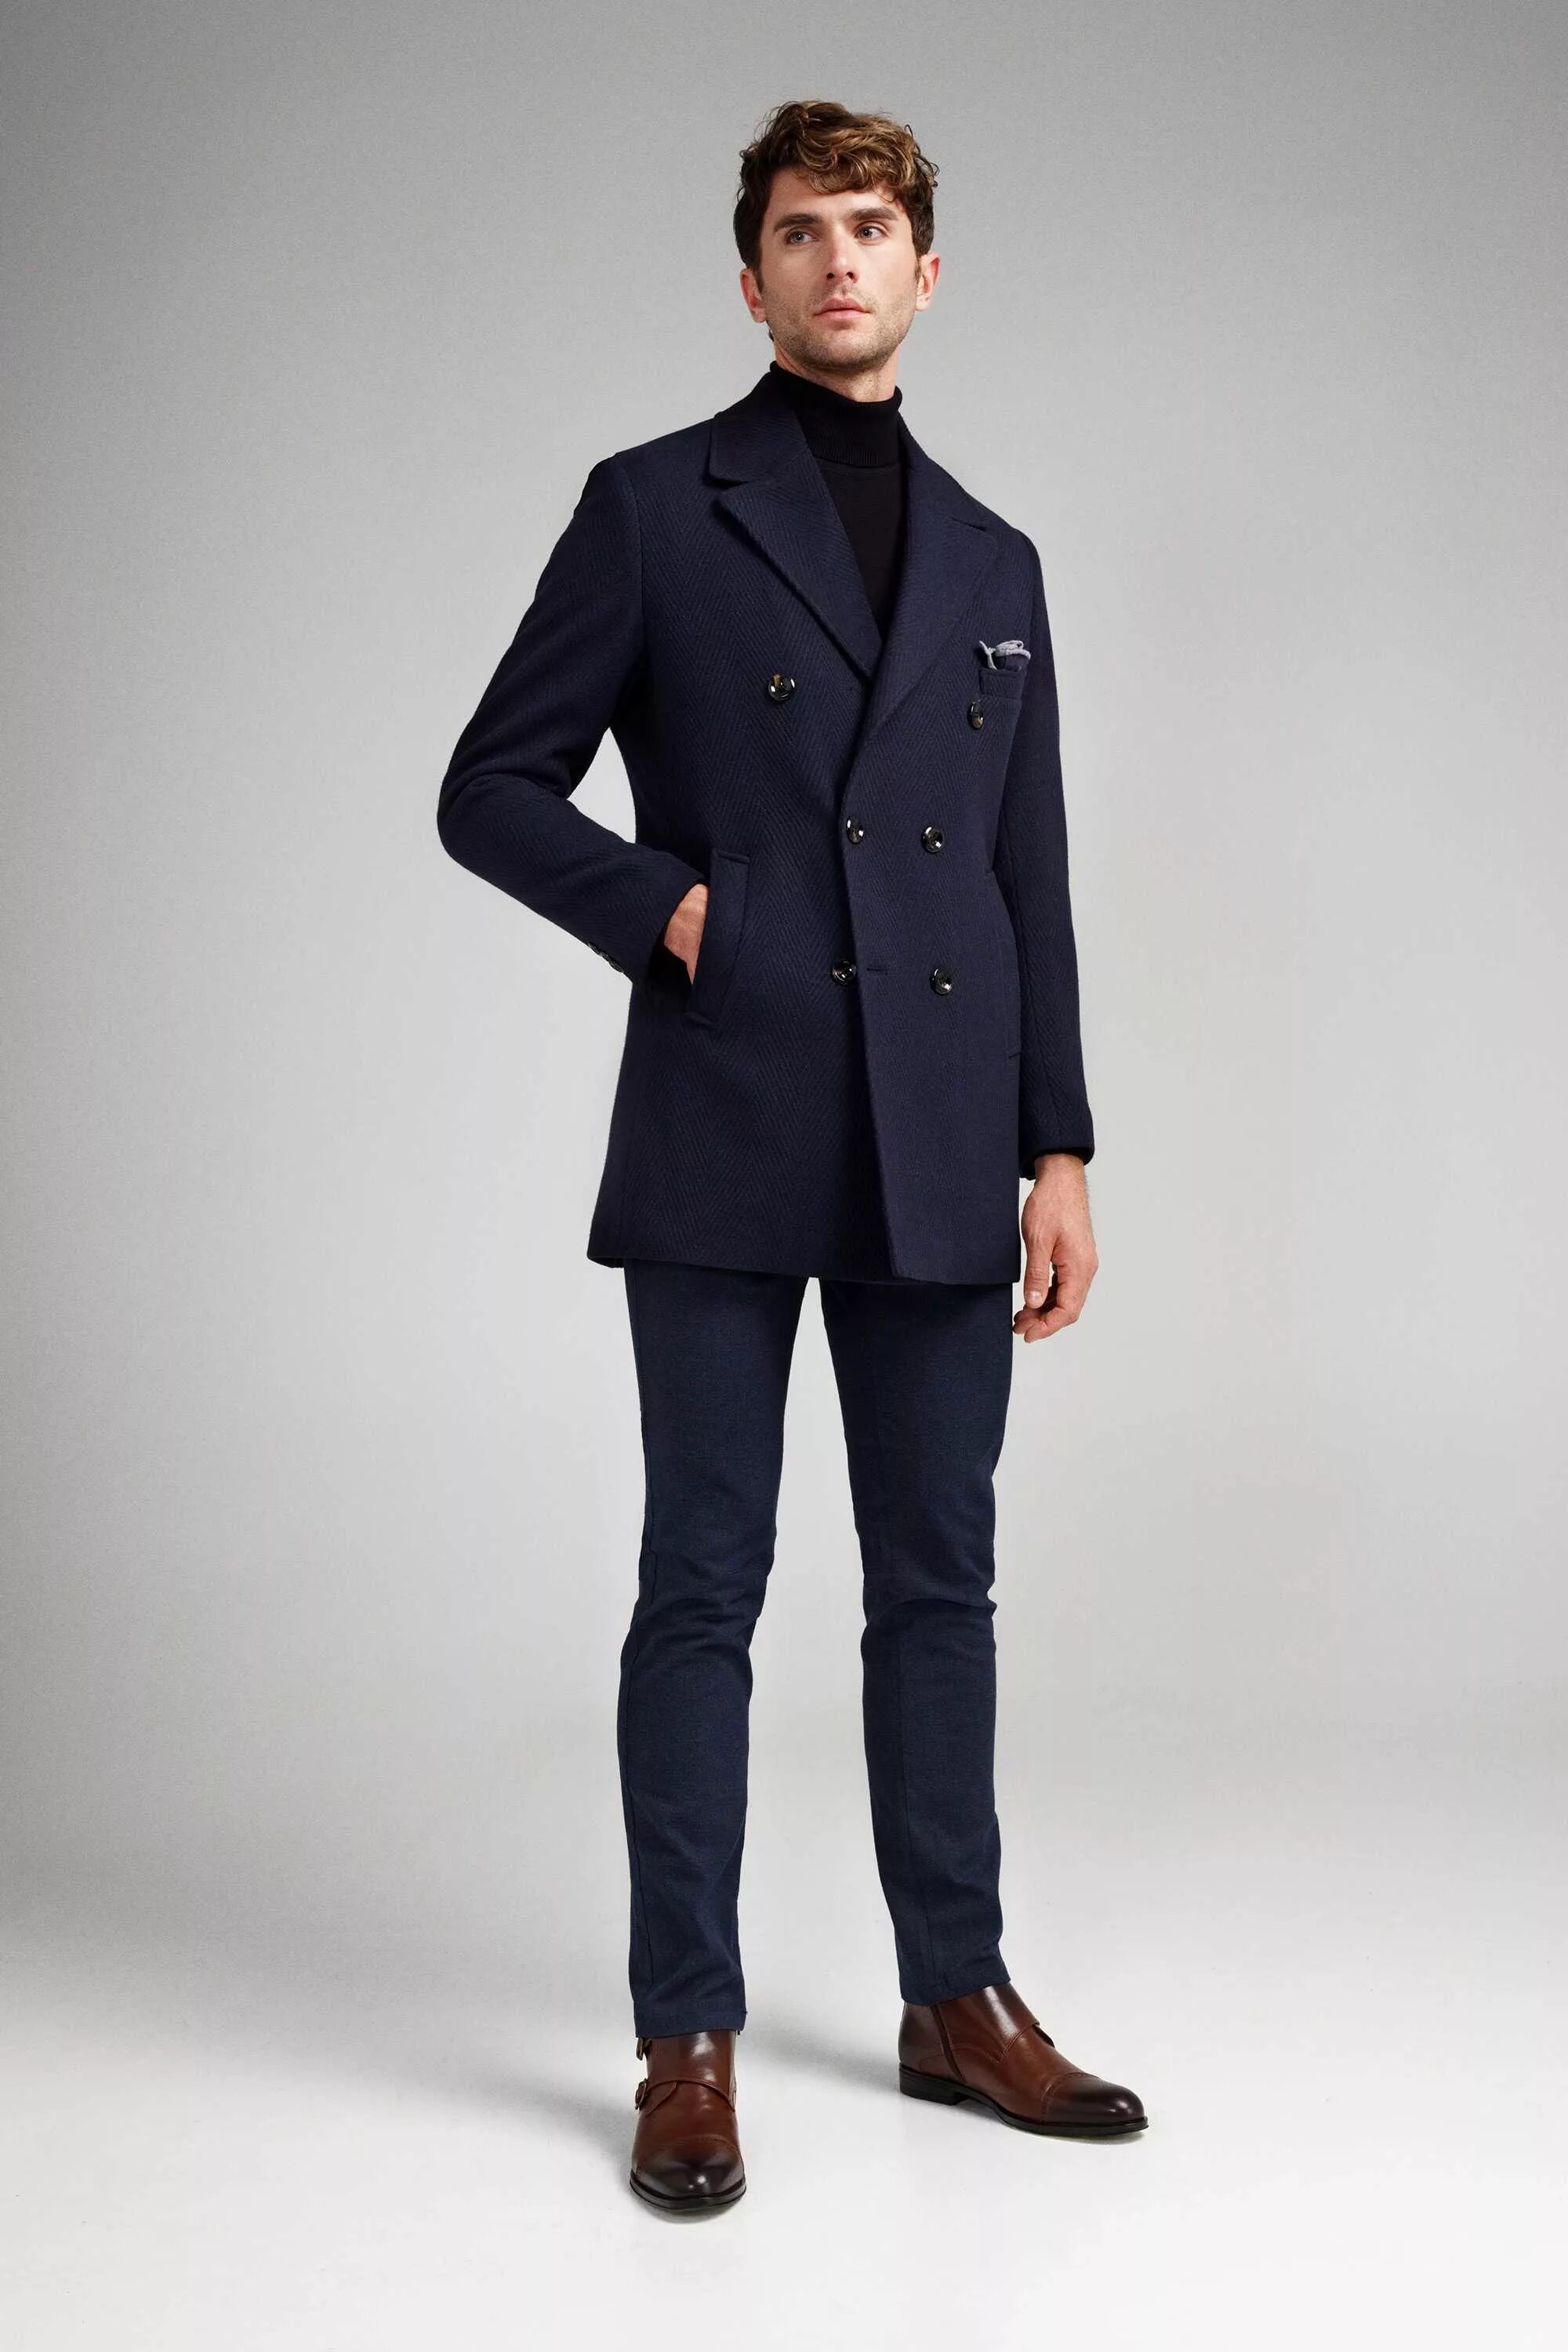 Легкое мужское пальто. Двубортное пальто мужское. Пальто мужское приталенное. Синее пальто мужское. Темно синее пальто мужское.